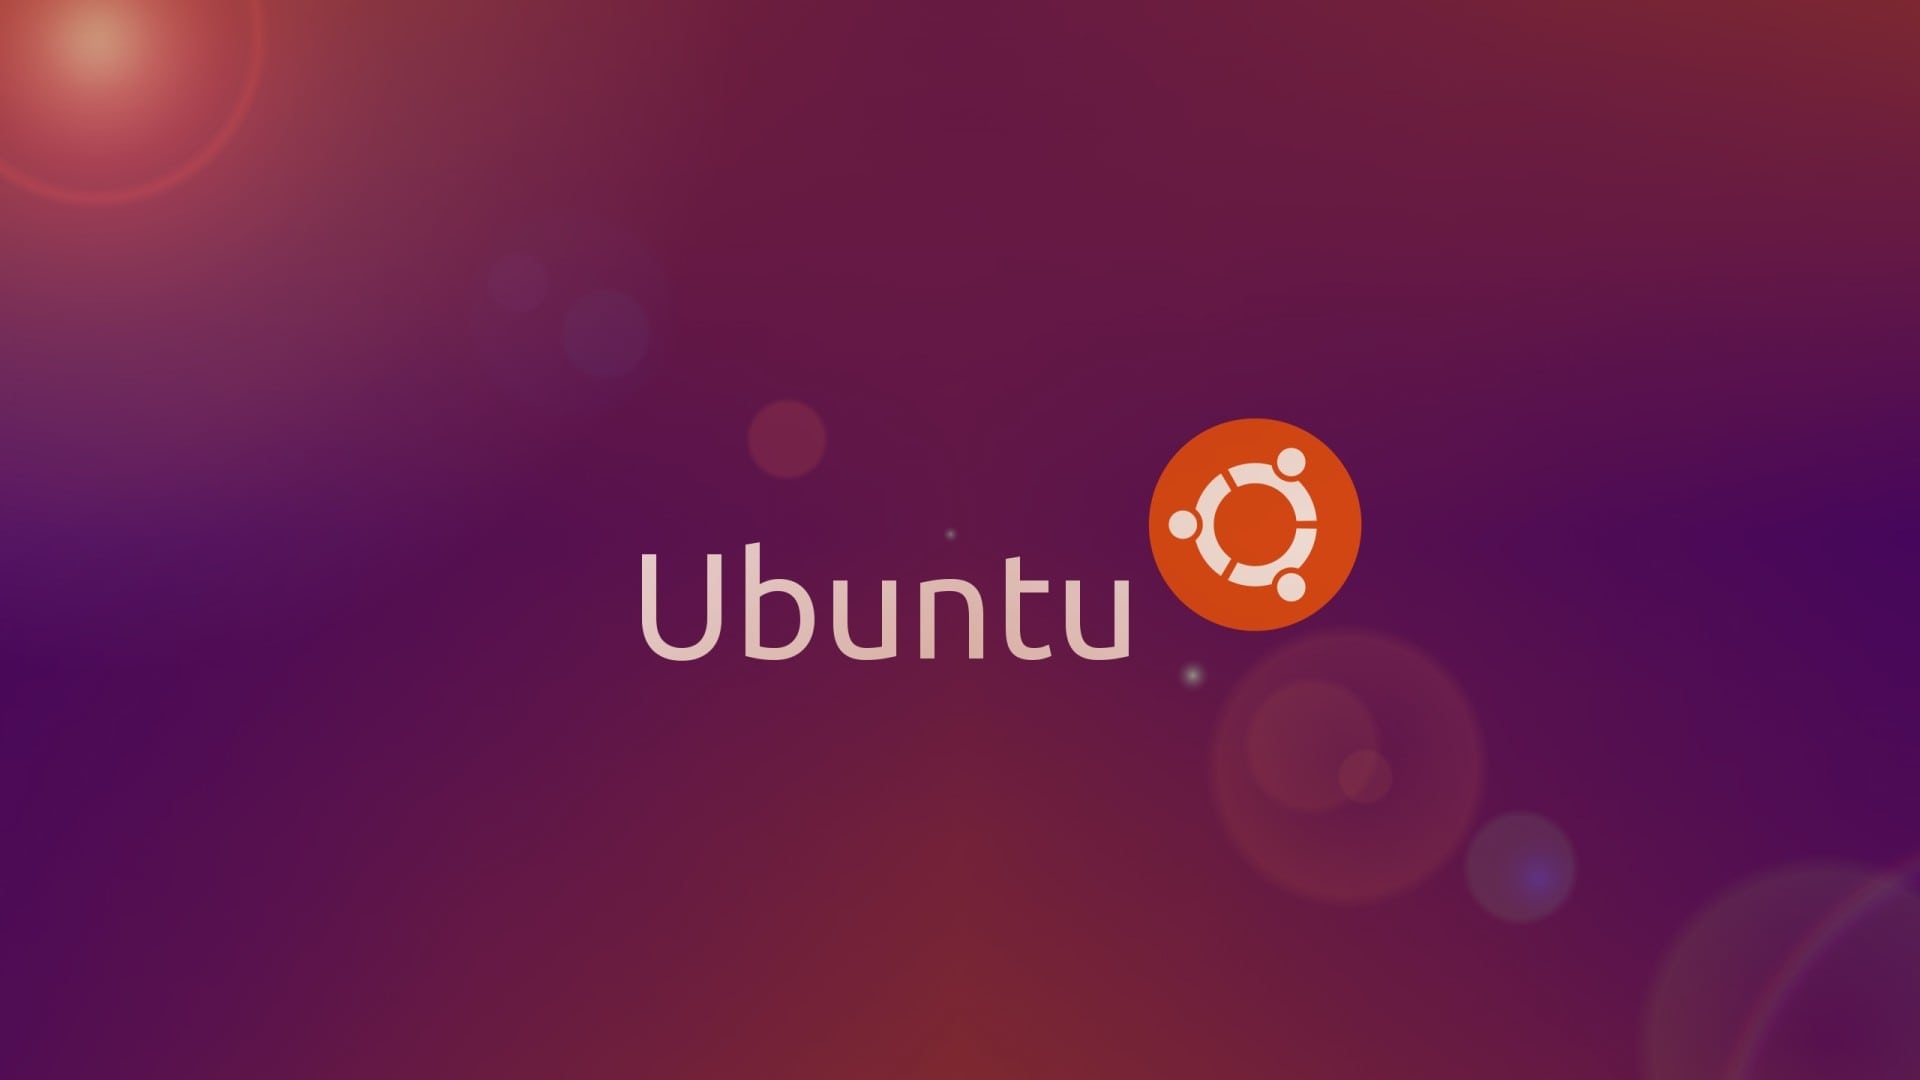 Wallpaper Ubuntu - Ubuntu Hd , HD Wallpaper & Backgrounds